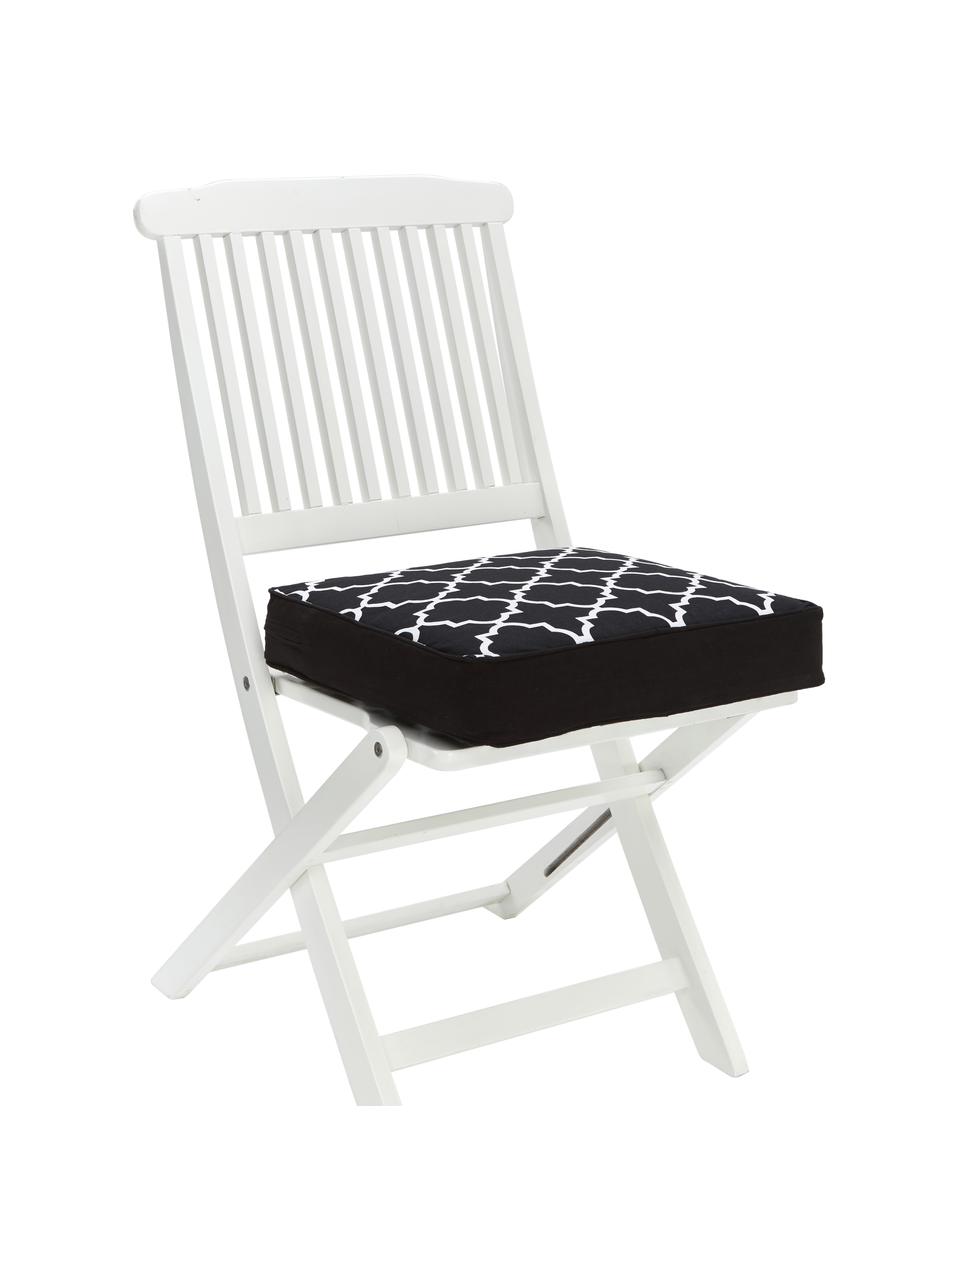 Hohes Sitzkissen Lana, Bezug: 100% Baumwolle, Schwarz, Weiss, B 40 x L 40 cm